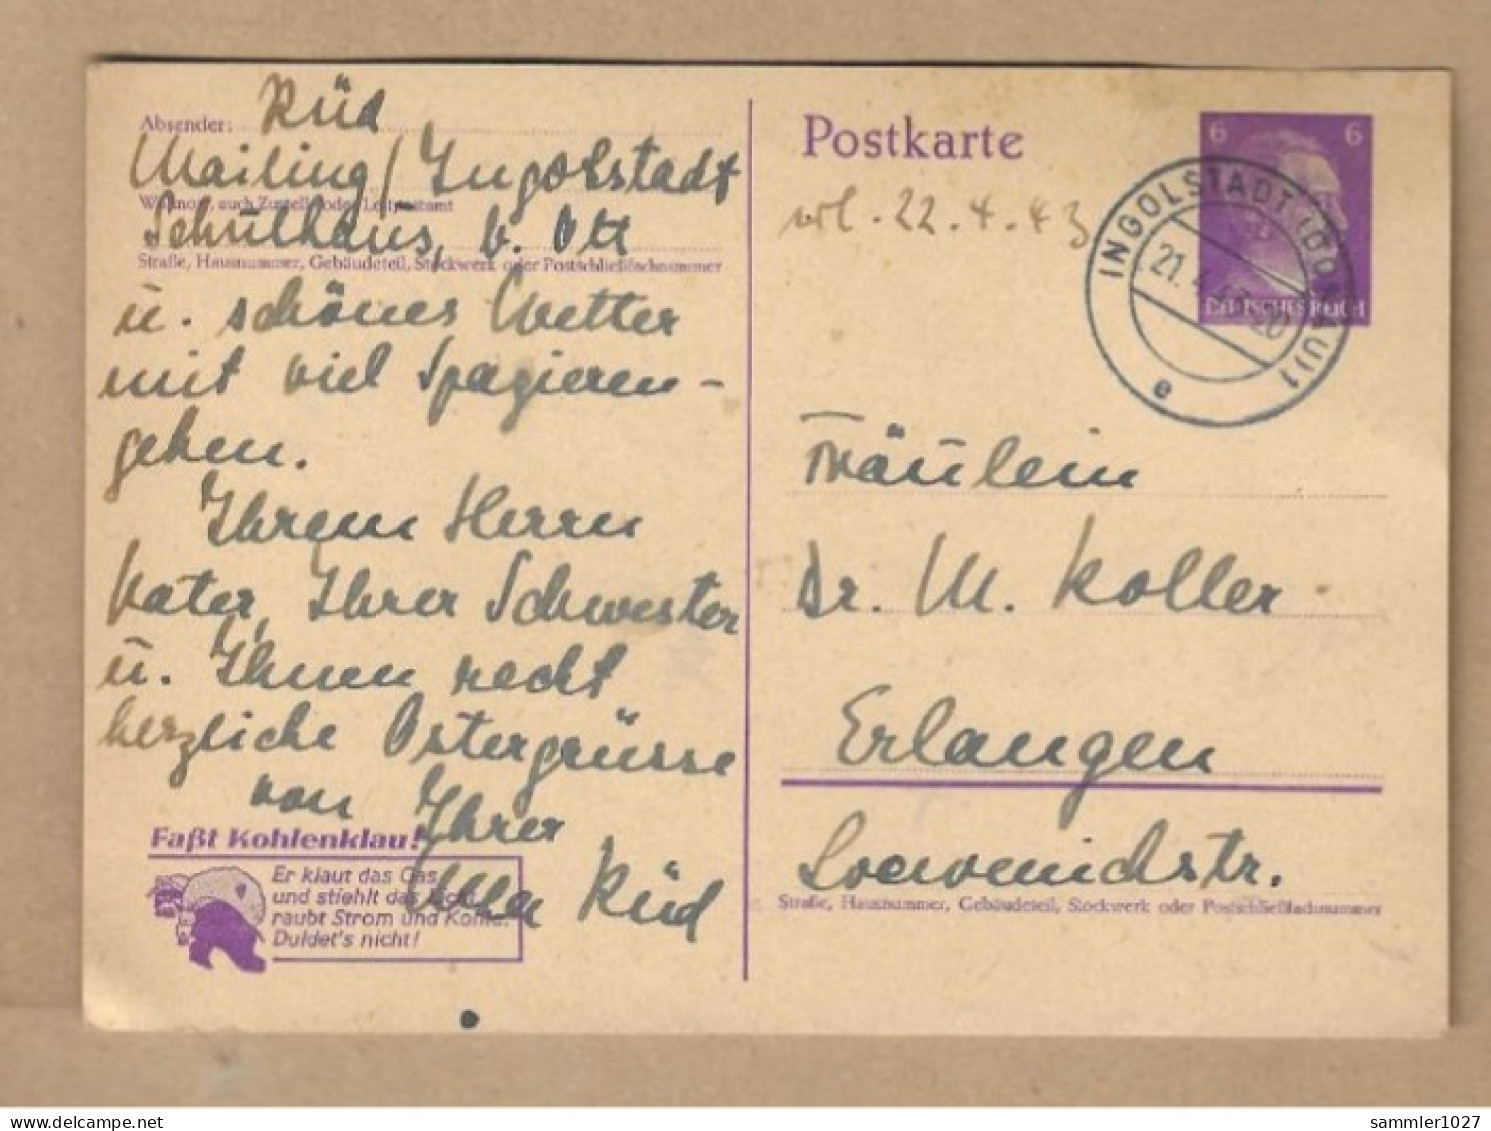 Los Vom 20.05 -  Ganzsaxhe-Postkarte Aus Ingolstadt 1943 - Lettres & Documents